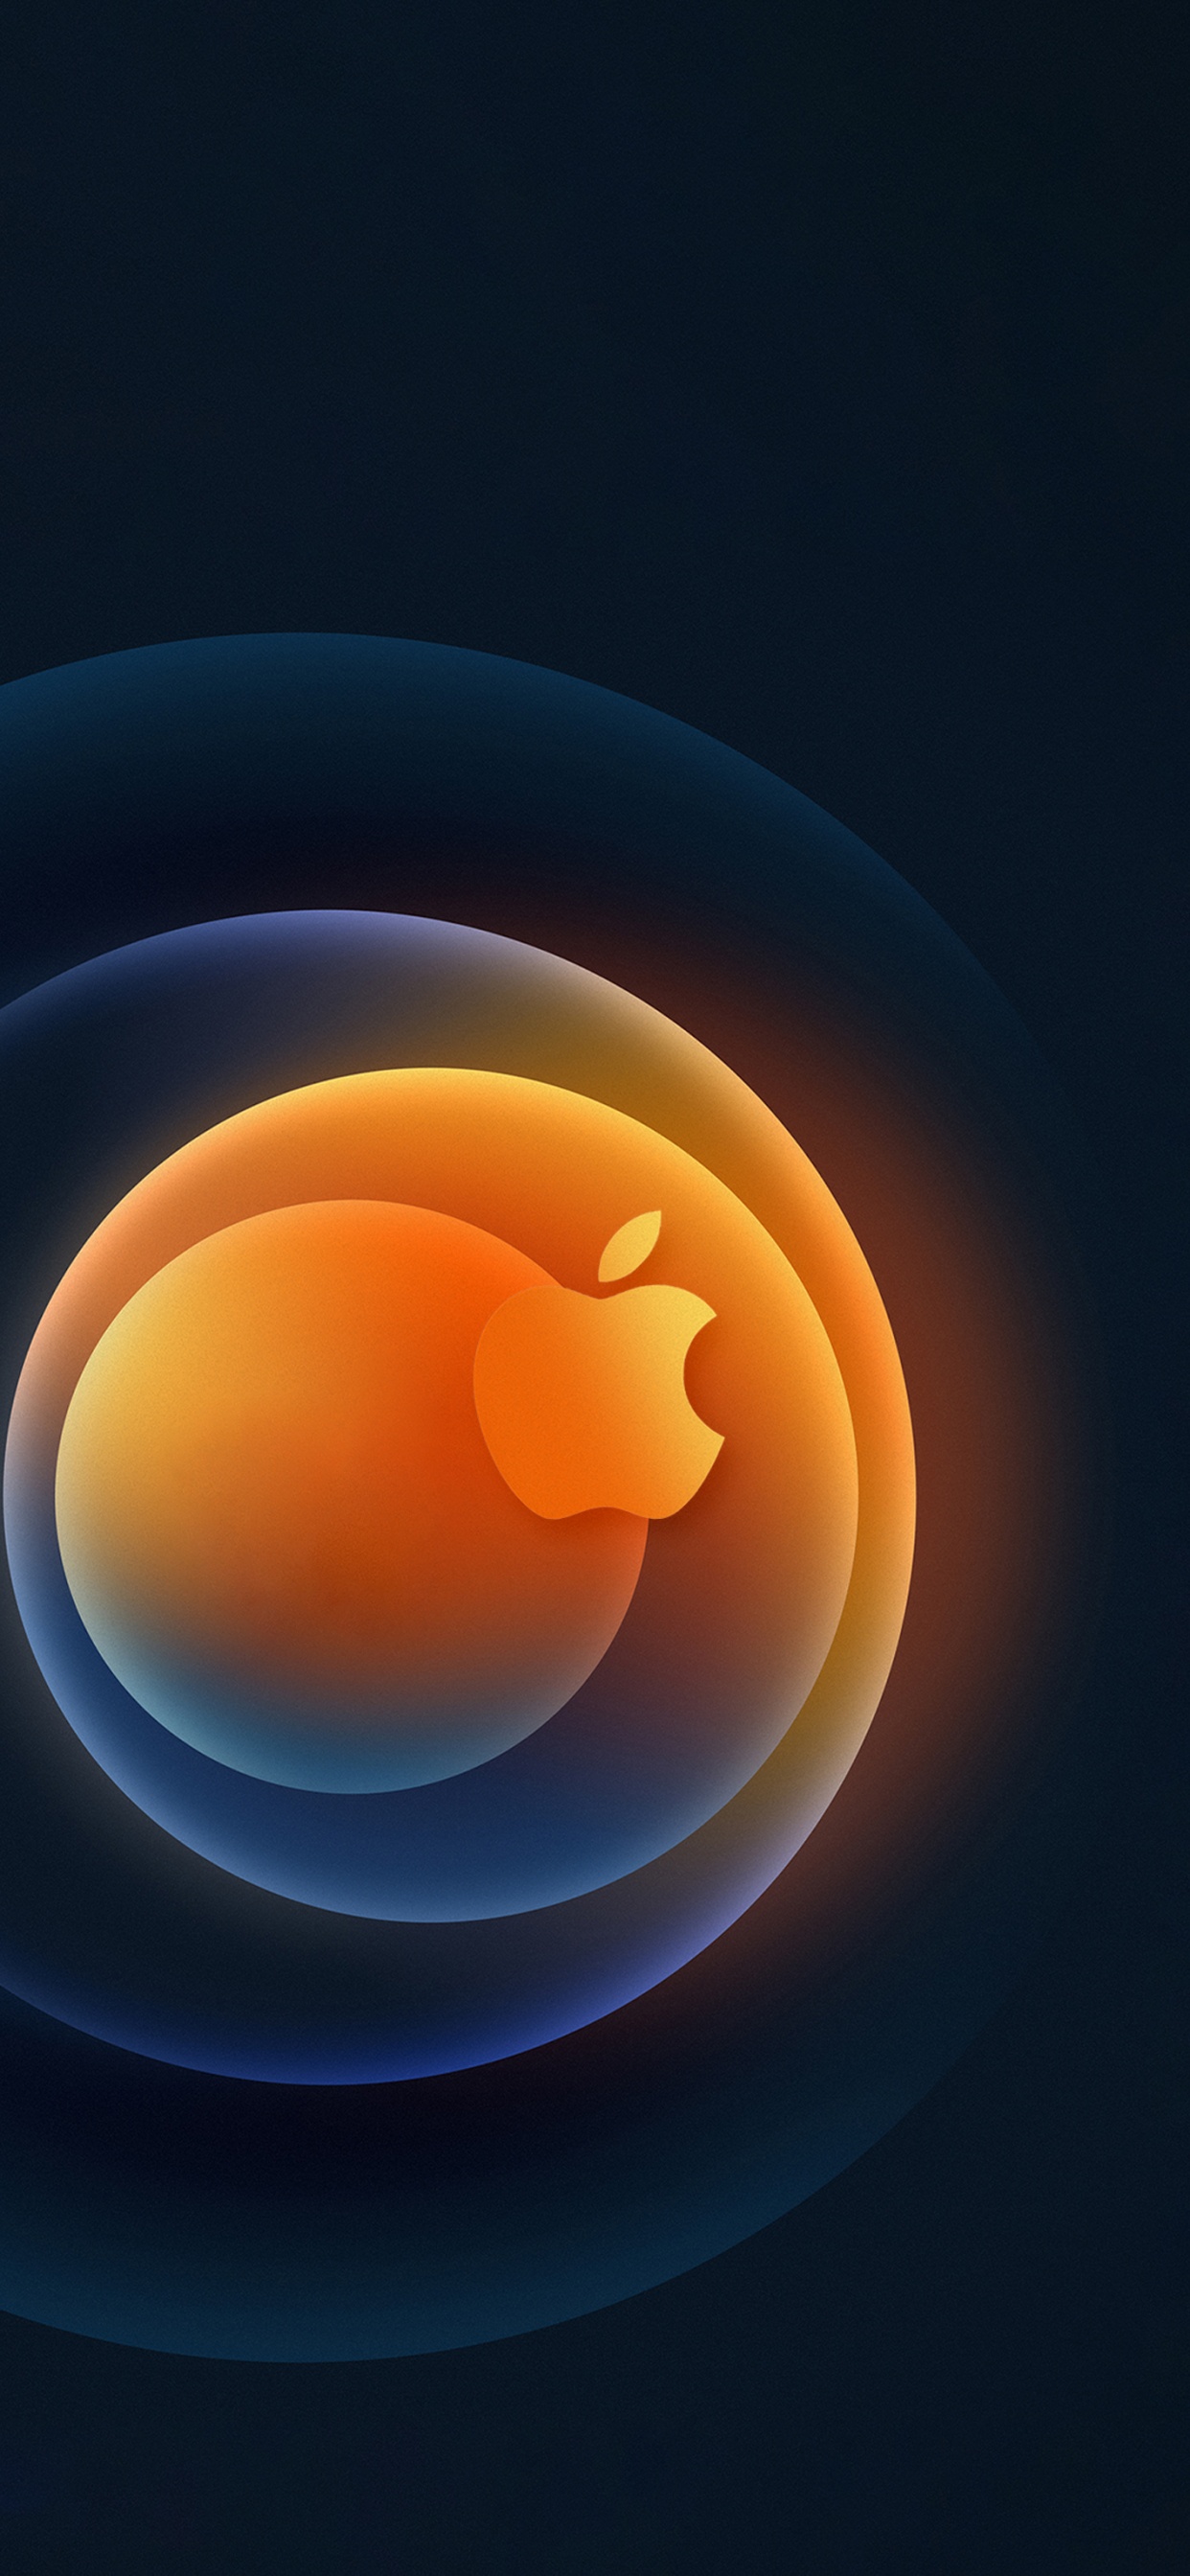 Apple, IPhone, Äpfeln, Orange, Farbigkeit. Wallpaper in 1242x2688 Resolution